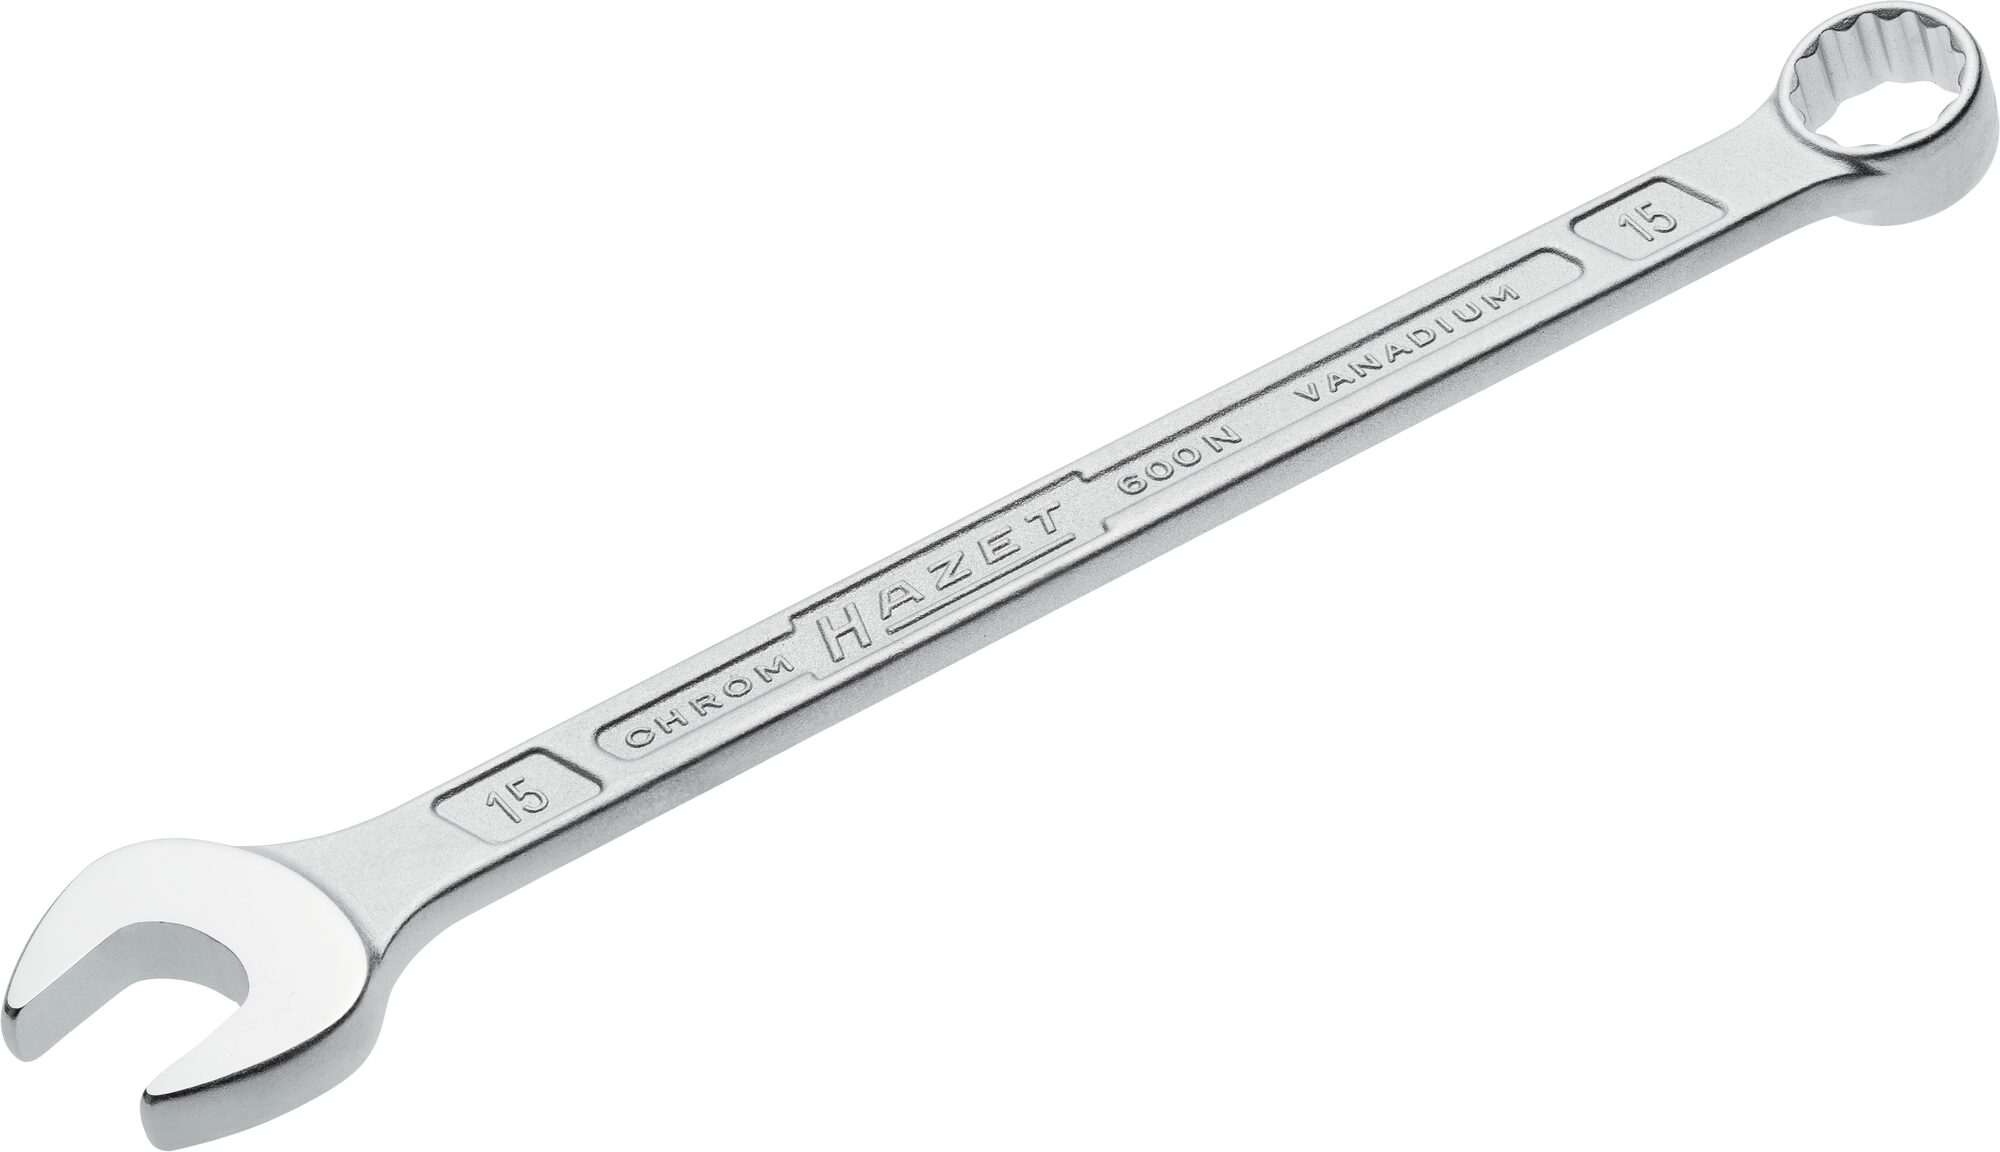 HAZET Ring-Maulschlüssel 600N-15 · Außen Doppel-Sechskant-Tractionsprofil · 15 mm